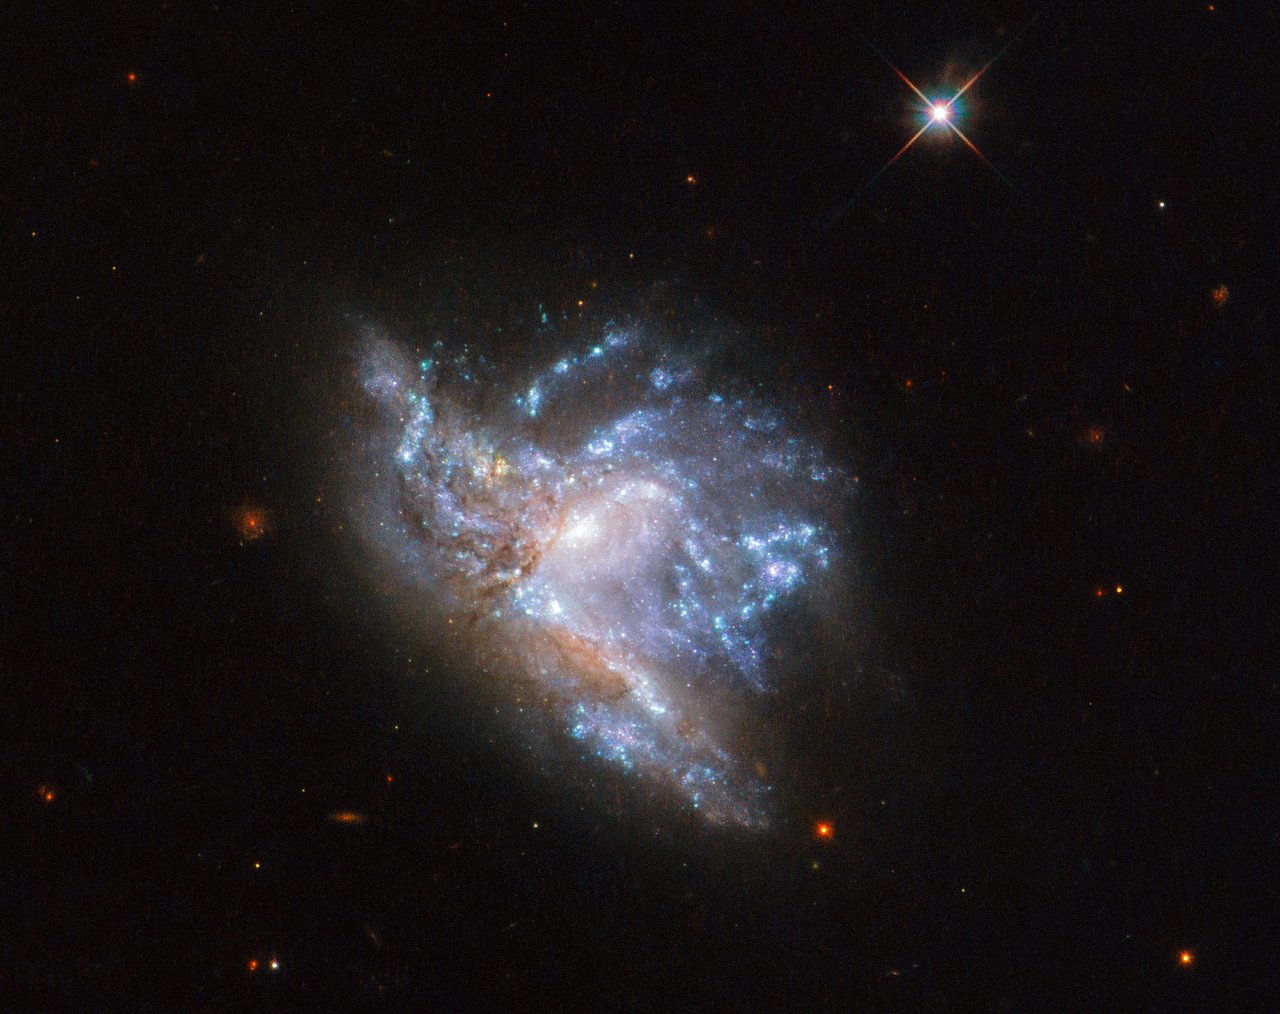 Credit: ESA/Hubble & NASA, A. Adamo et al.